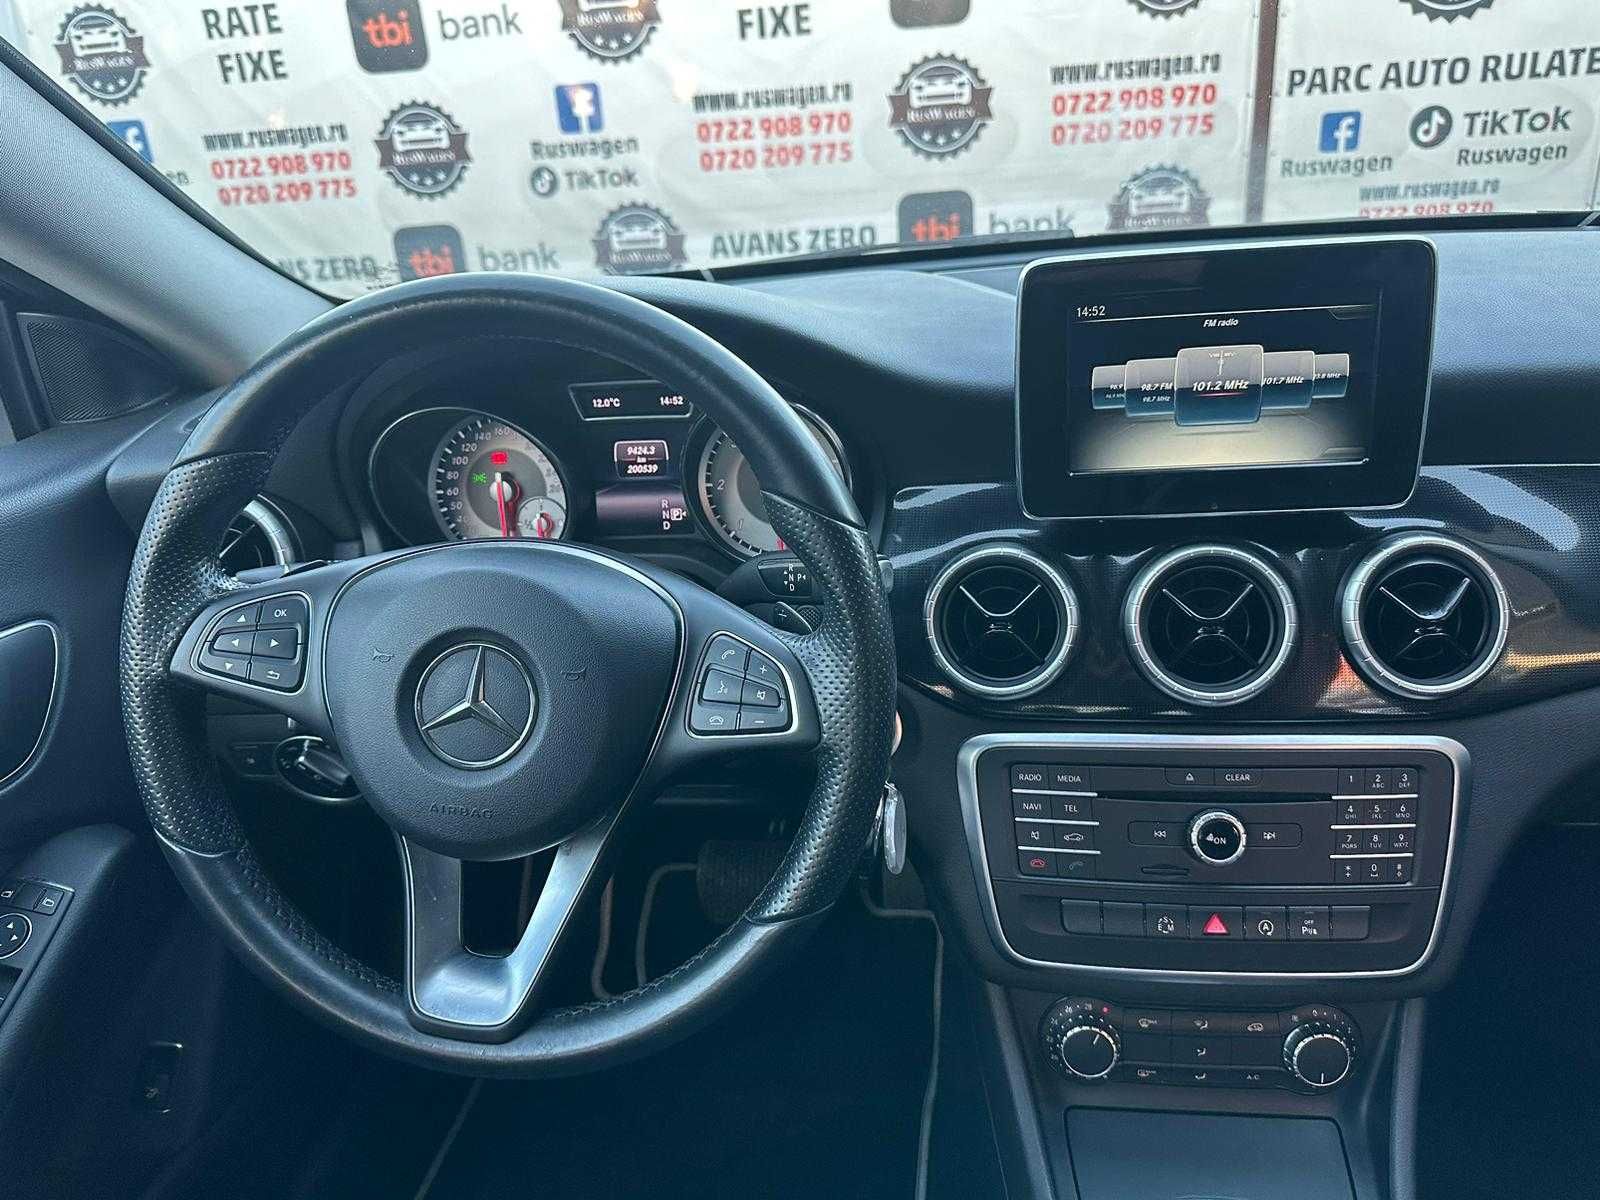 Mercedes Benz CLA 180 2015 1,5 Diesel Euro 5